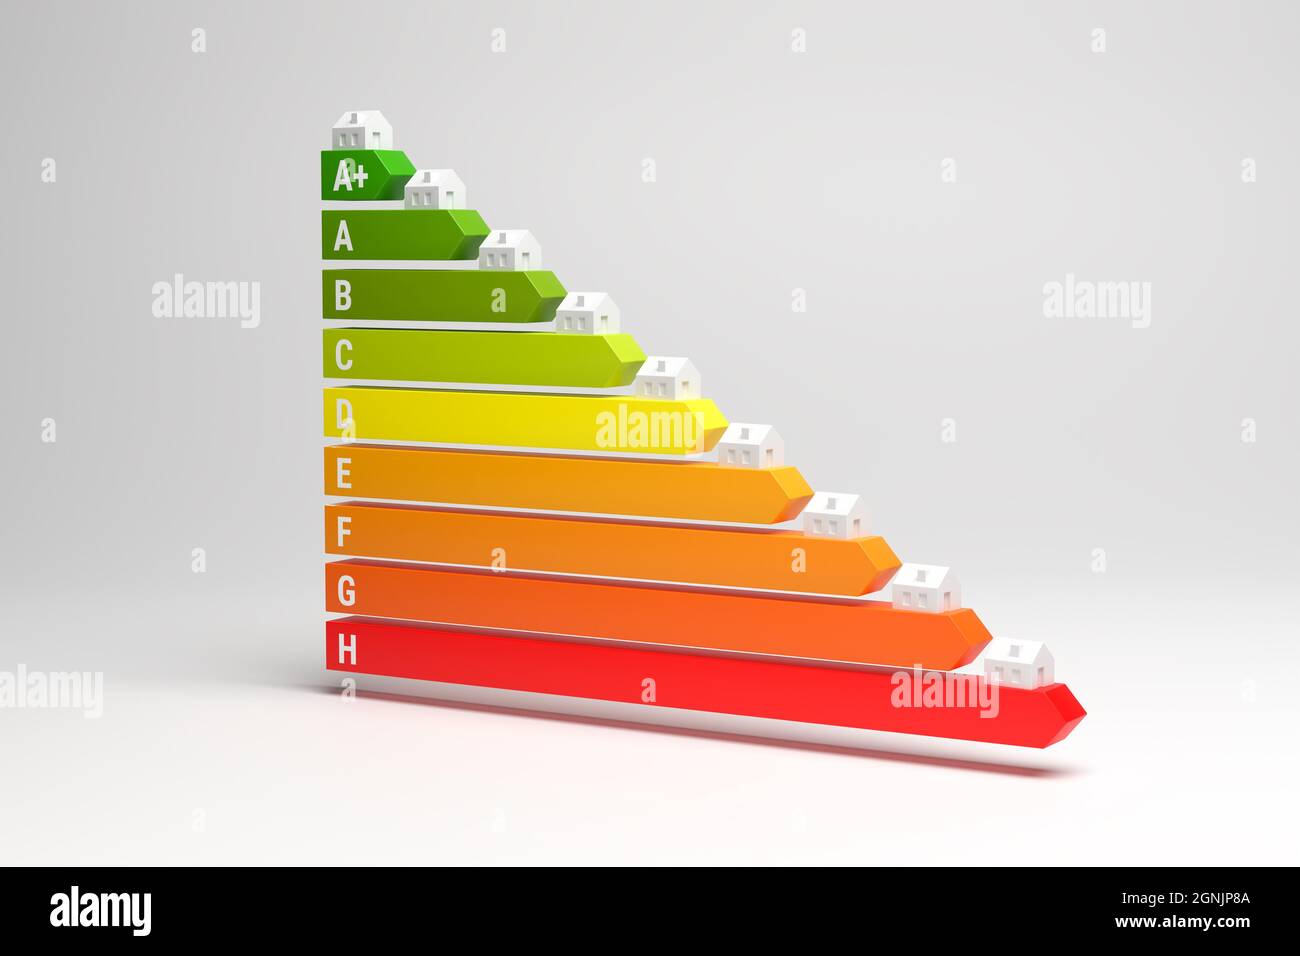 Etiquetas energéticas para casas en Alemania (Clase de eficiencia energética A+ a H). Casas modelo en las flechas de la etiqueta de energía. Foto de stock